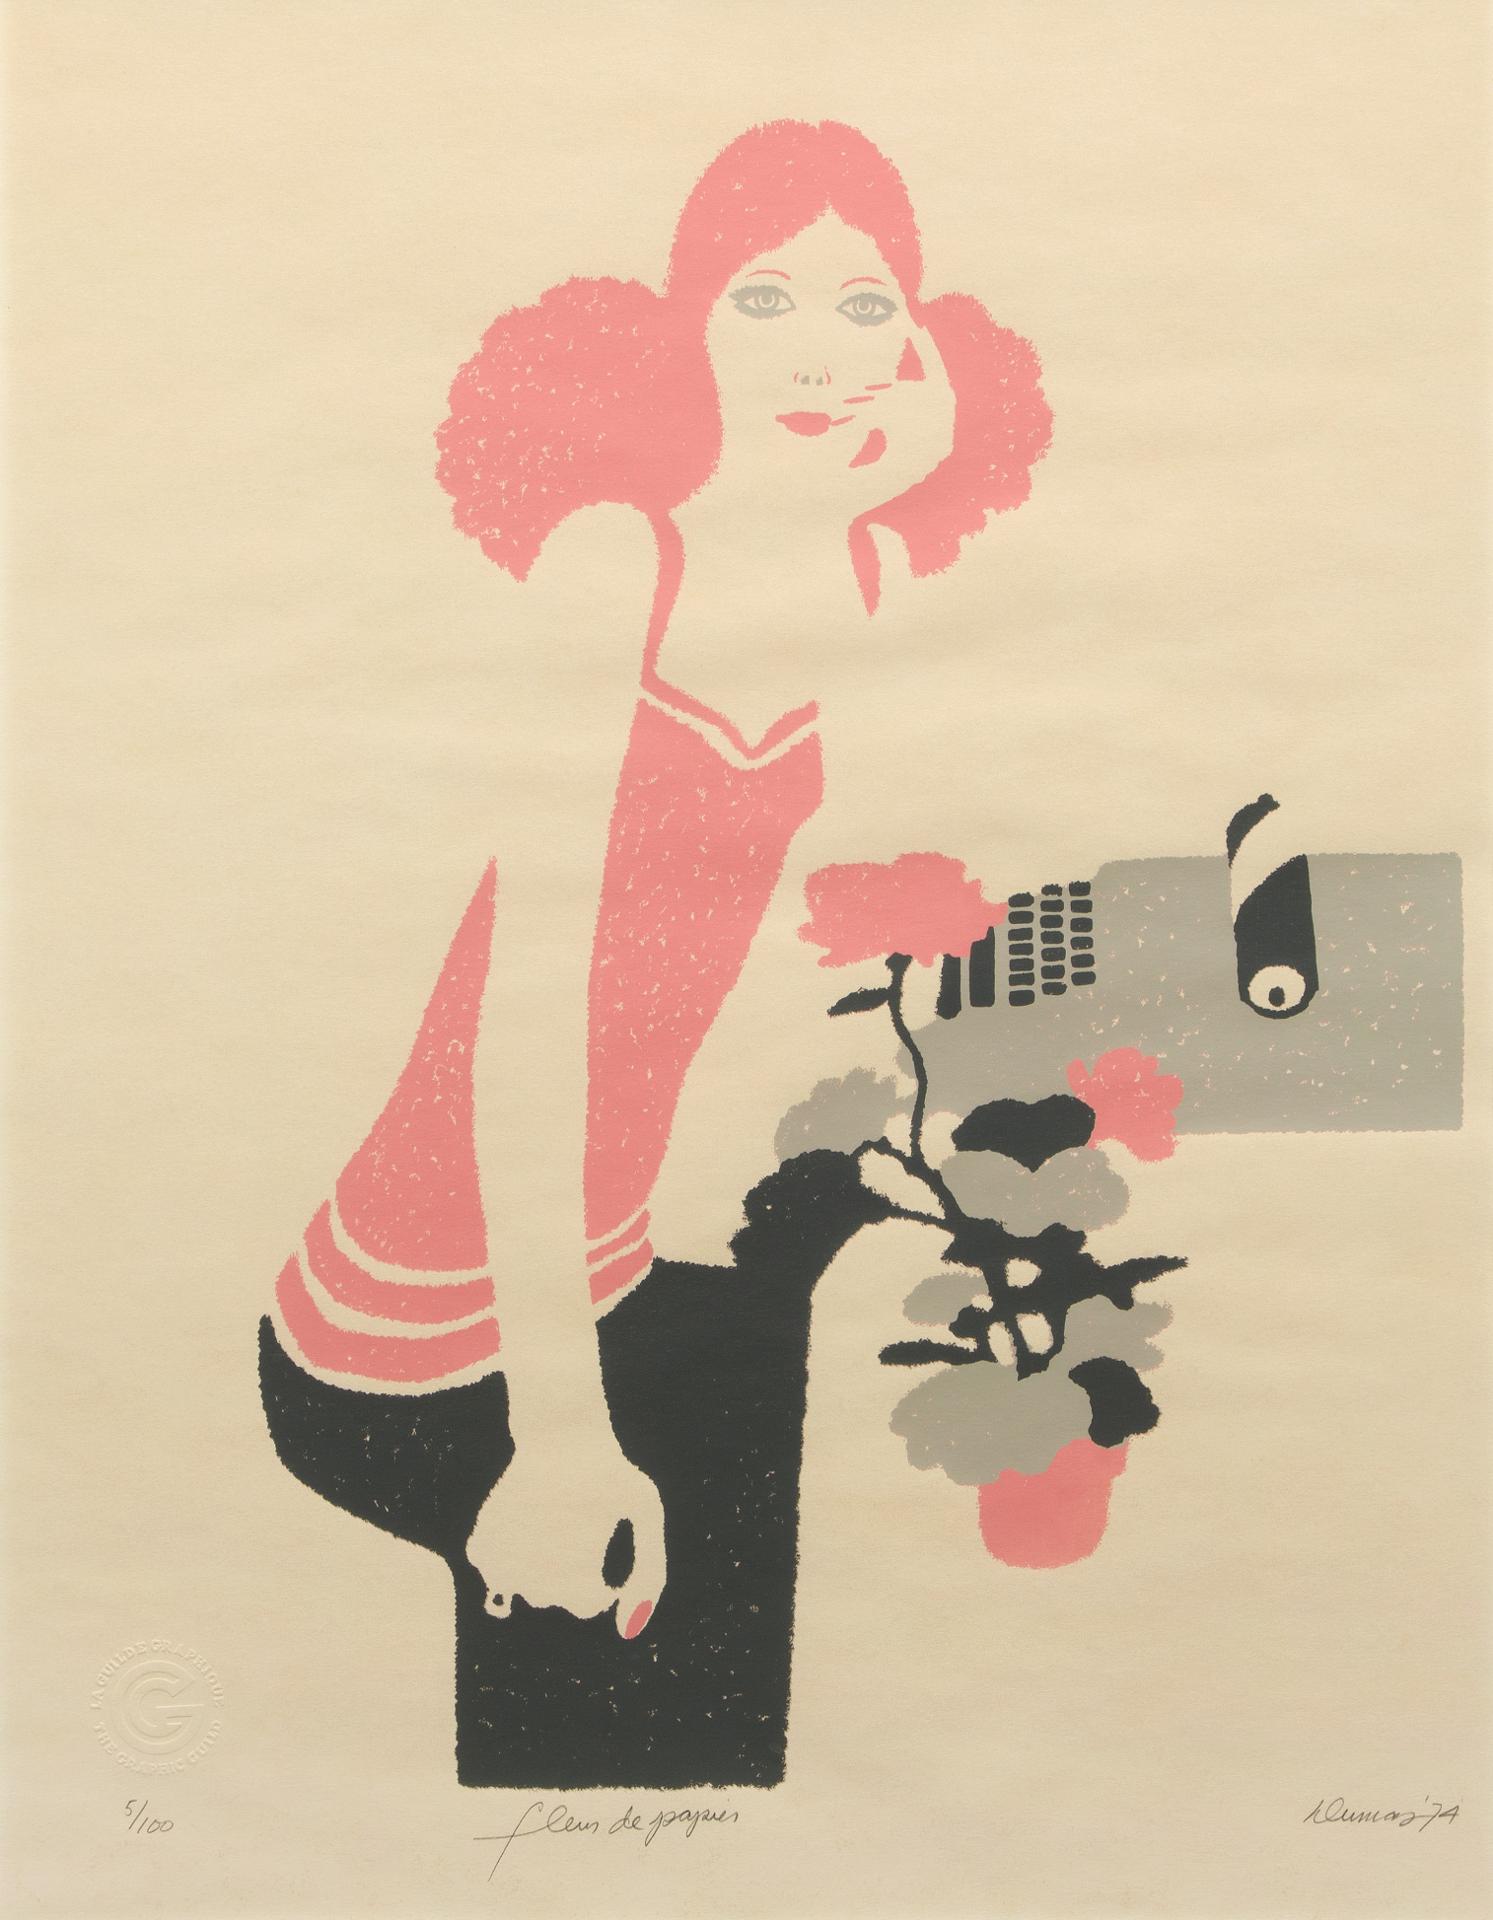 Antoine Dumas (1932) - Fleurs de papier, 1974